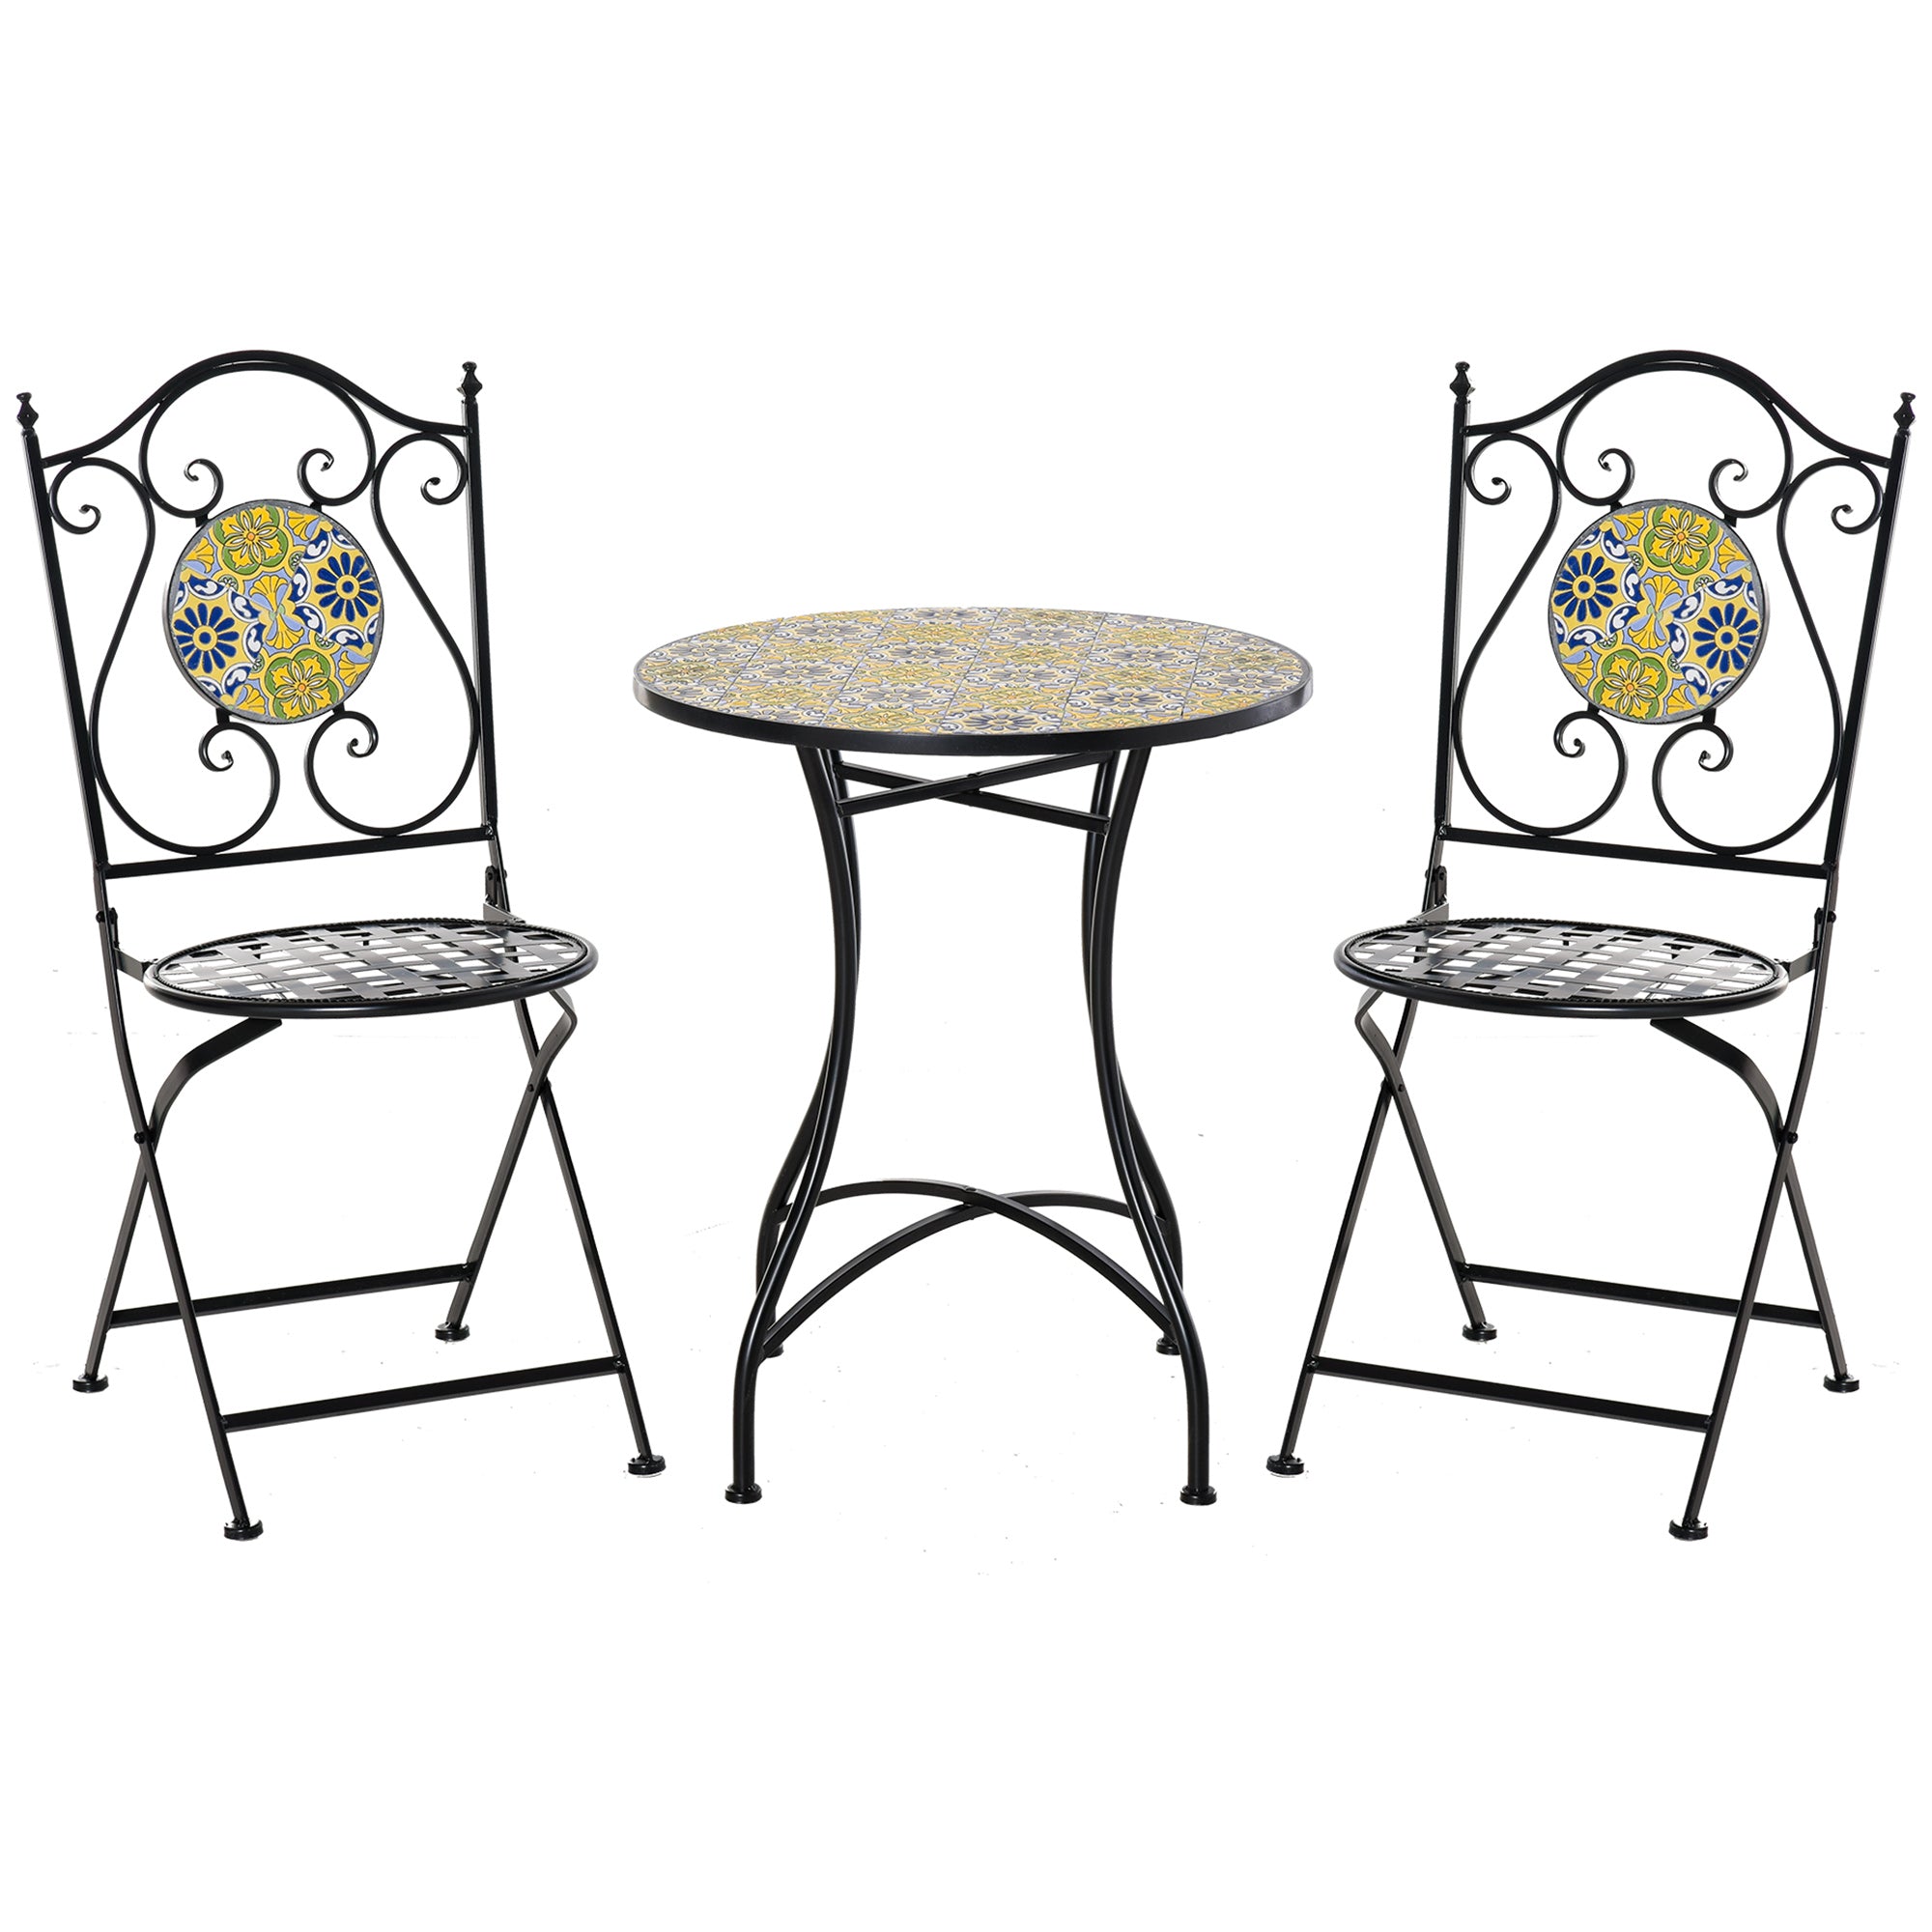 EASYCOMFORT Set Tavolo e Sedie da Balcone 3 Pezzi, Set da Giardino  Pieghevoli in Metallo con Maioliche Colorate, Multicolore